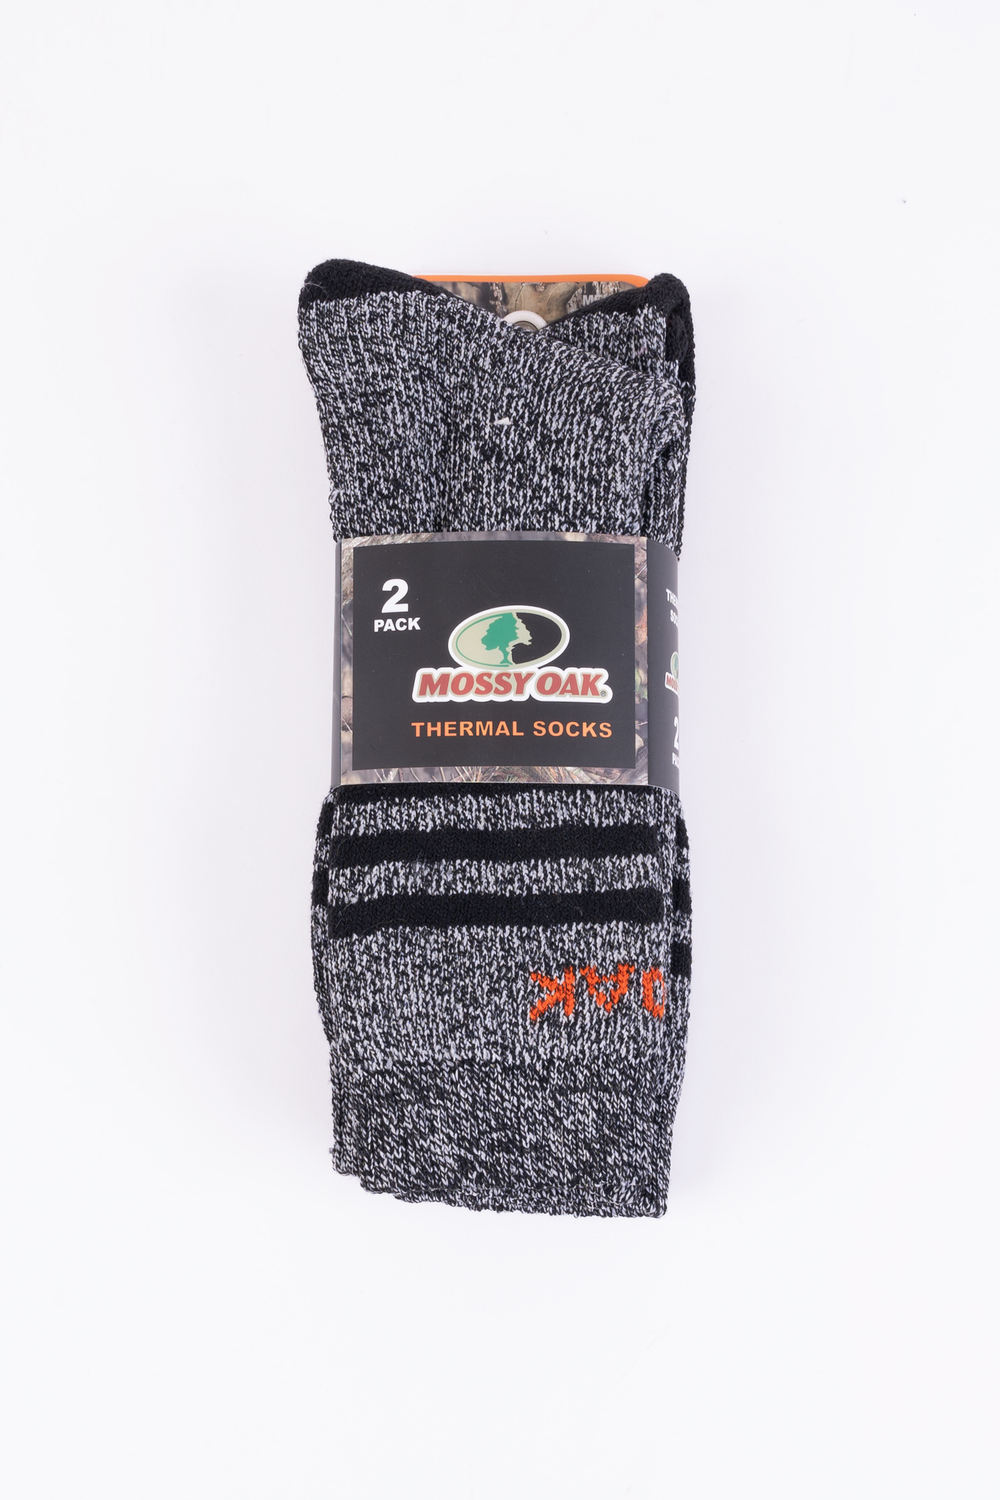 Mossy Oak - Men's thermal socks, 2 pairs